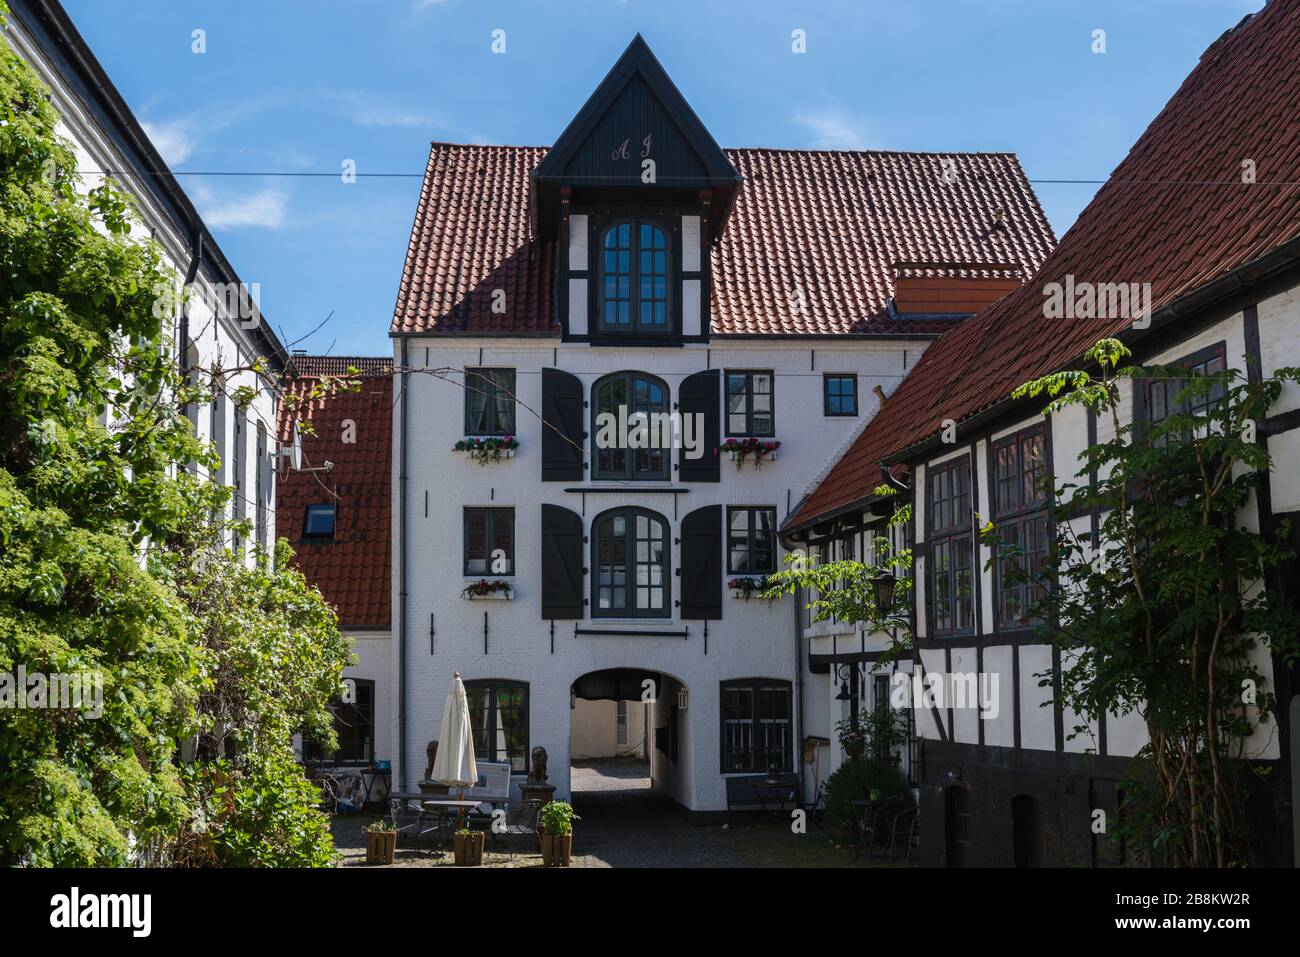 Cortile storico nella città di Flensburg sul fiordo di Flenburg, città di confine con Danimarca, Schleswig-Holstein, Germania settentrionale, Europa centrale, Foto Stock